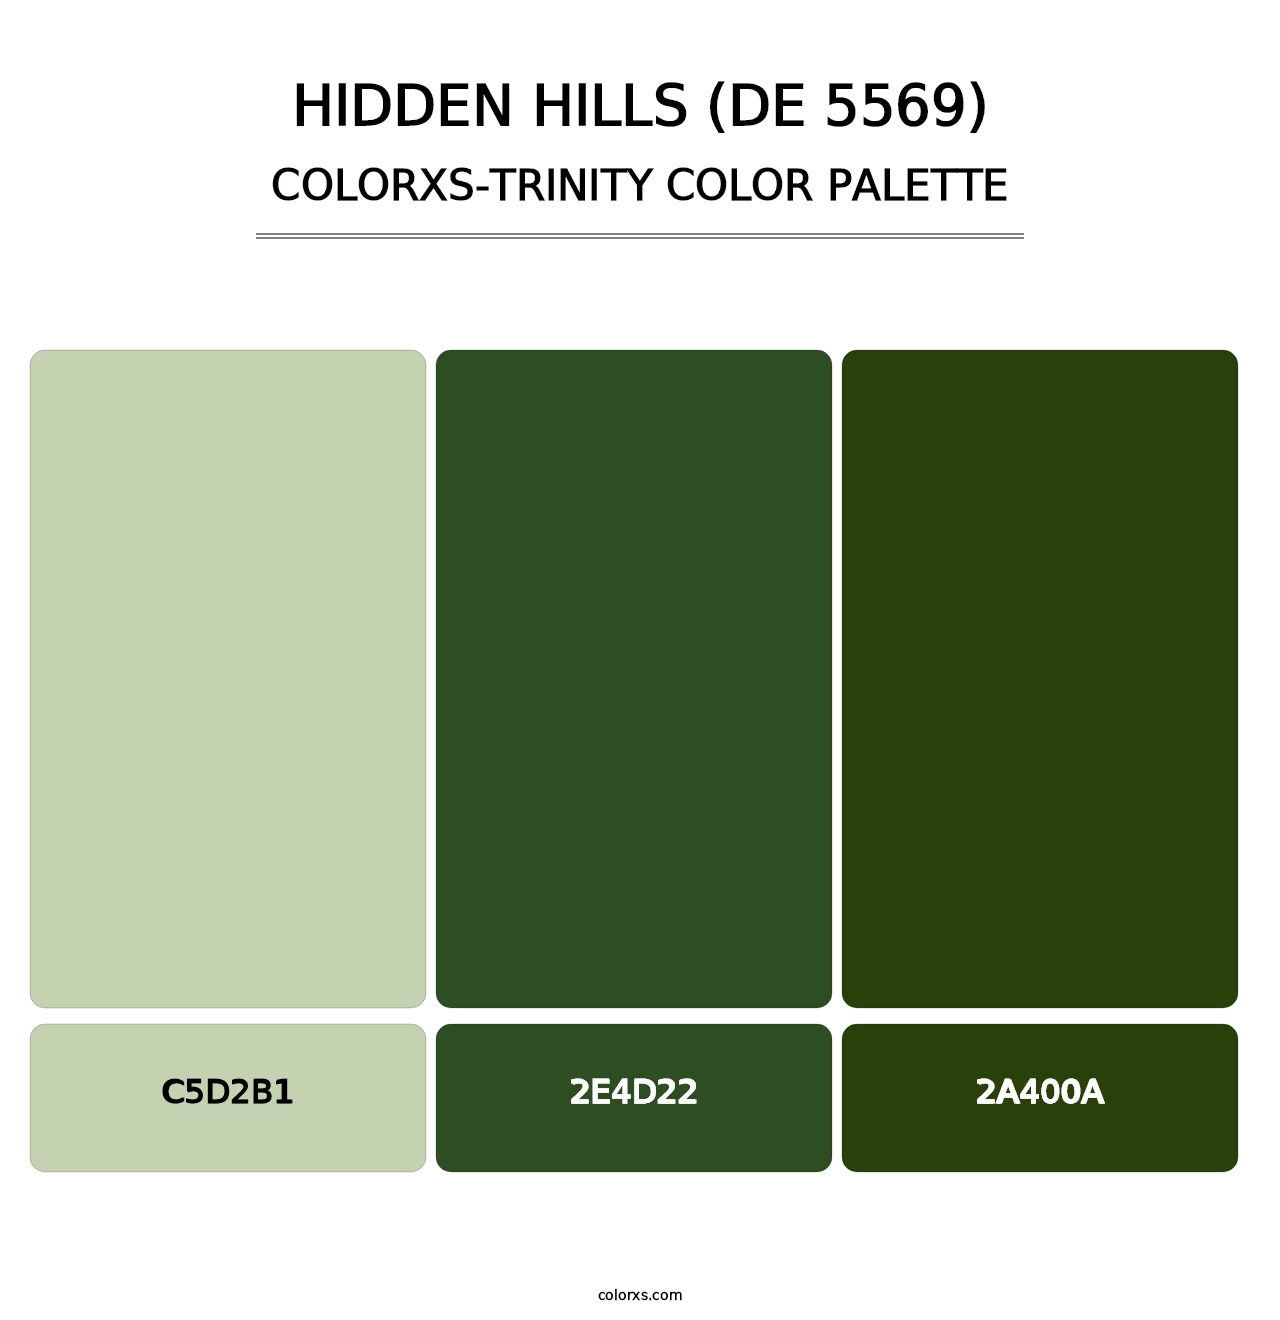 Hidden Hills (DE 5569) - Colorxs Trinity Palette